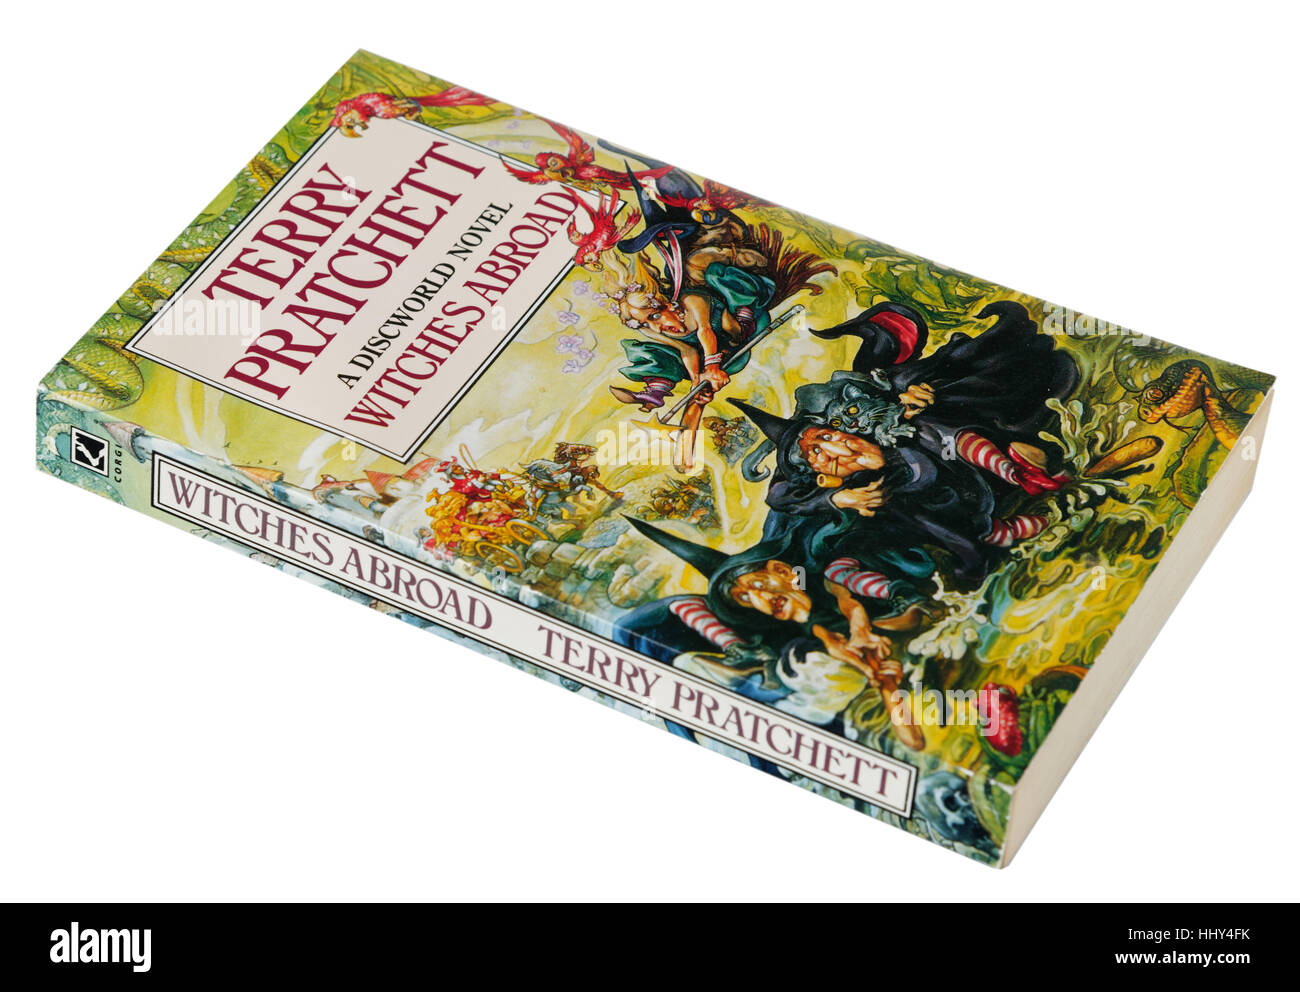 Les sorcières à l'étranger ; un roman Disque-monde de Terry Pratchett Banque D'Images